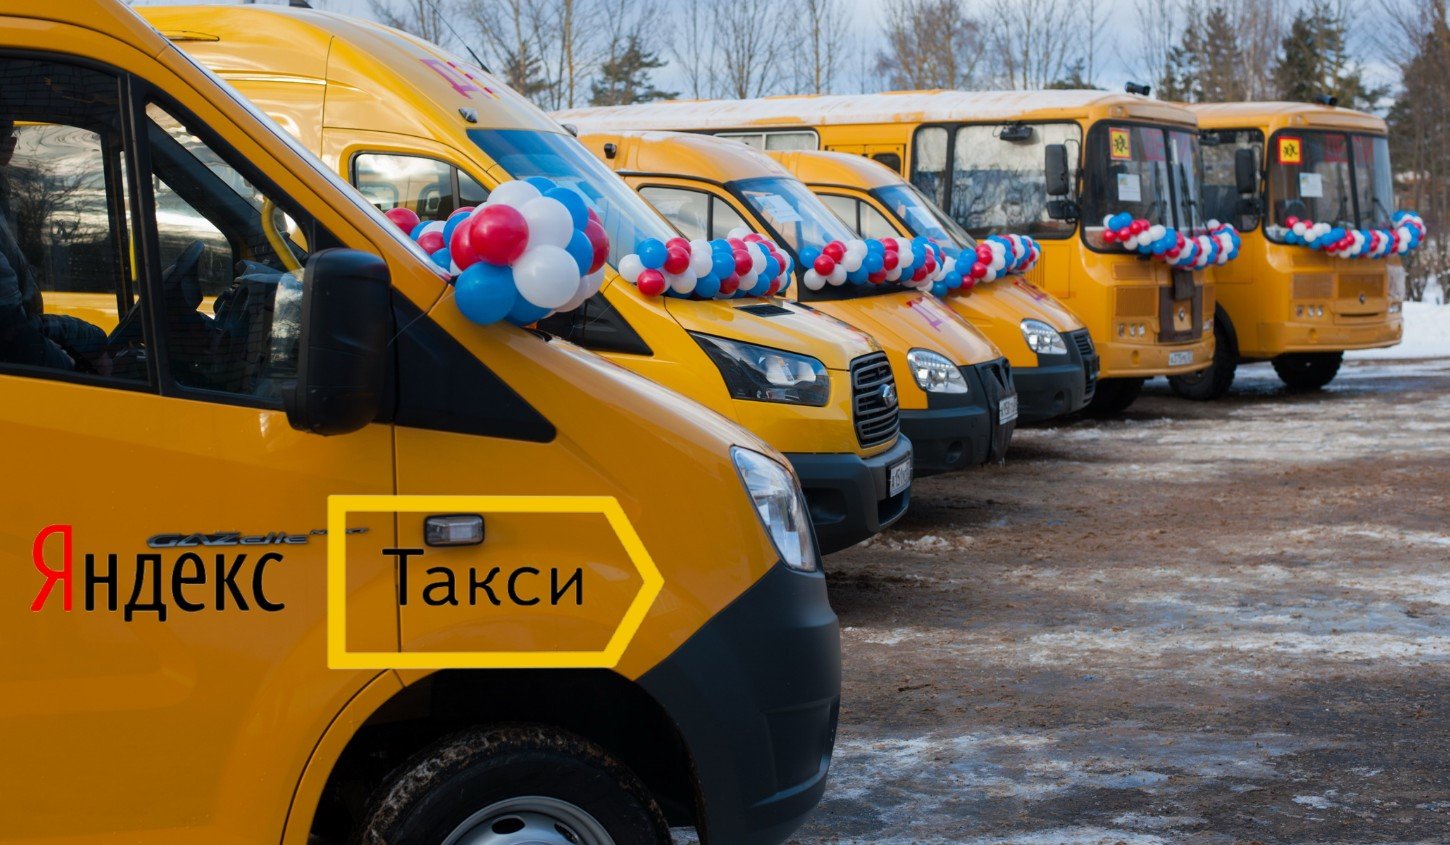 Маршрутное такси новые. Школьные автобусы в России. Общественный транспорт такси.